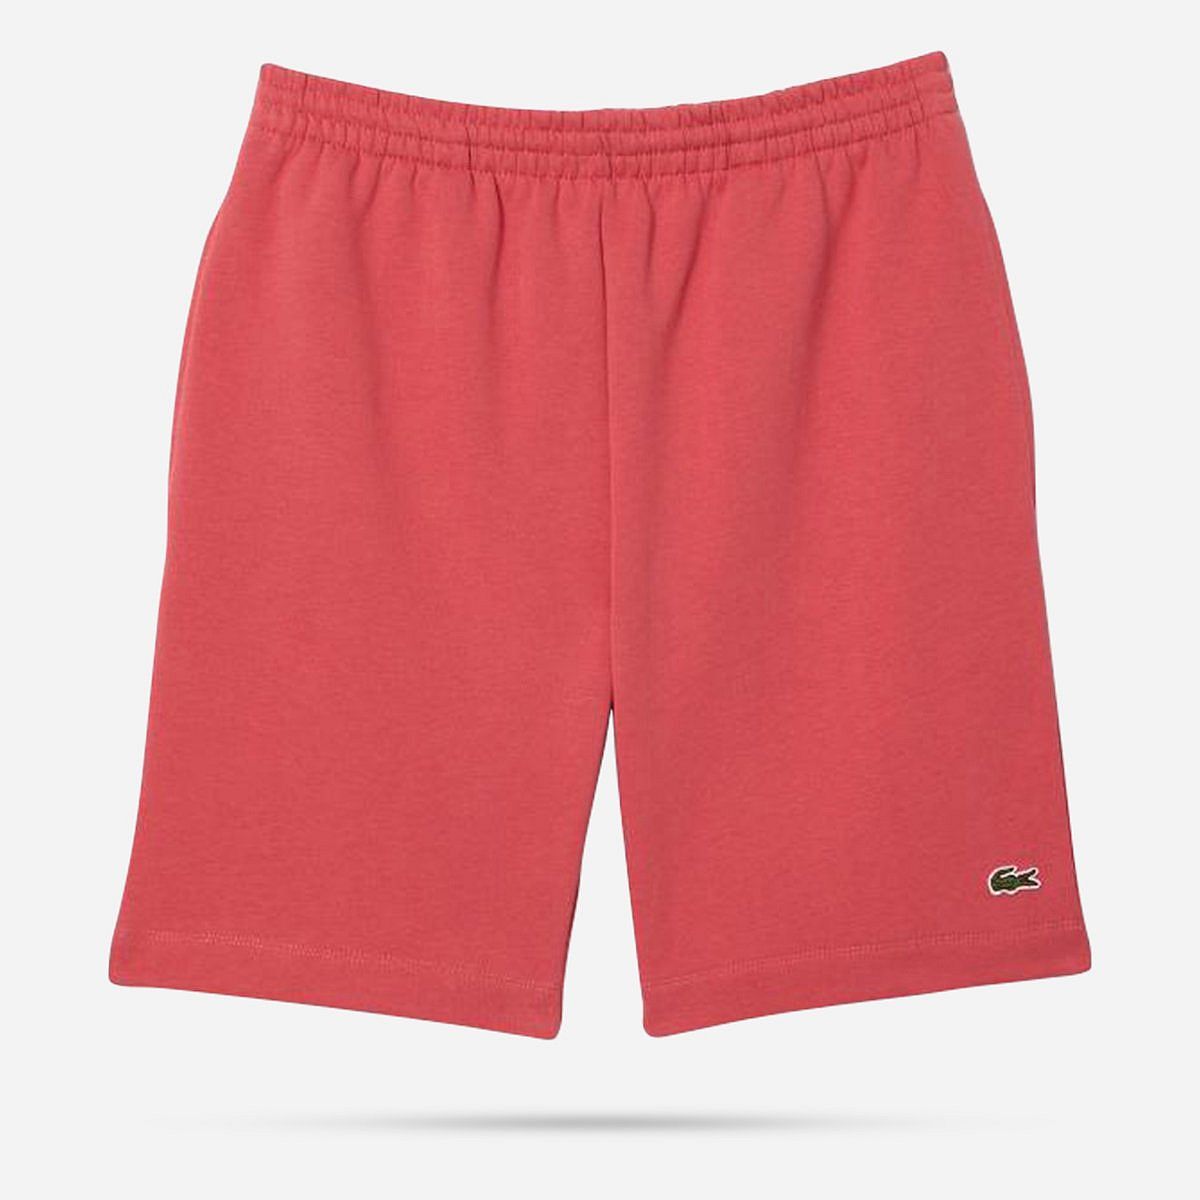 AN309108 1HG1 Men's shorts 01